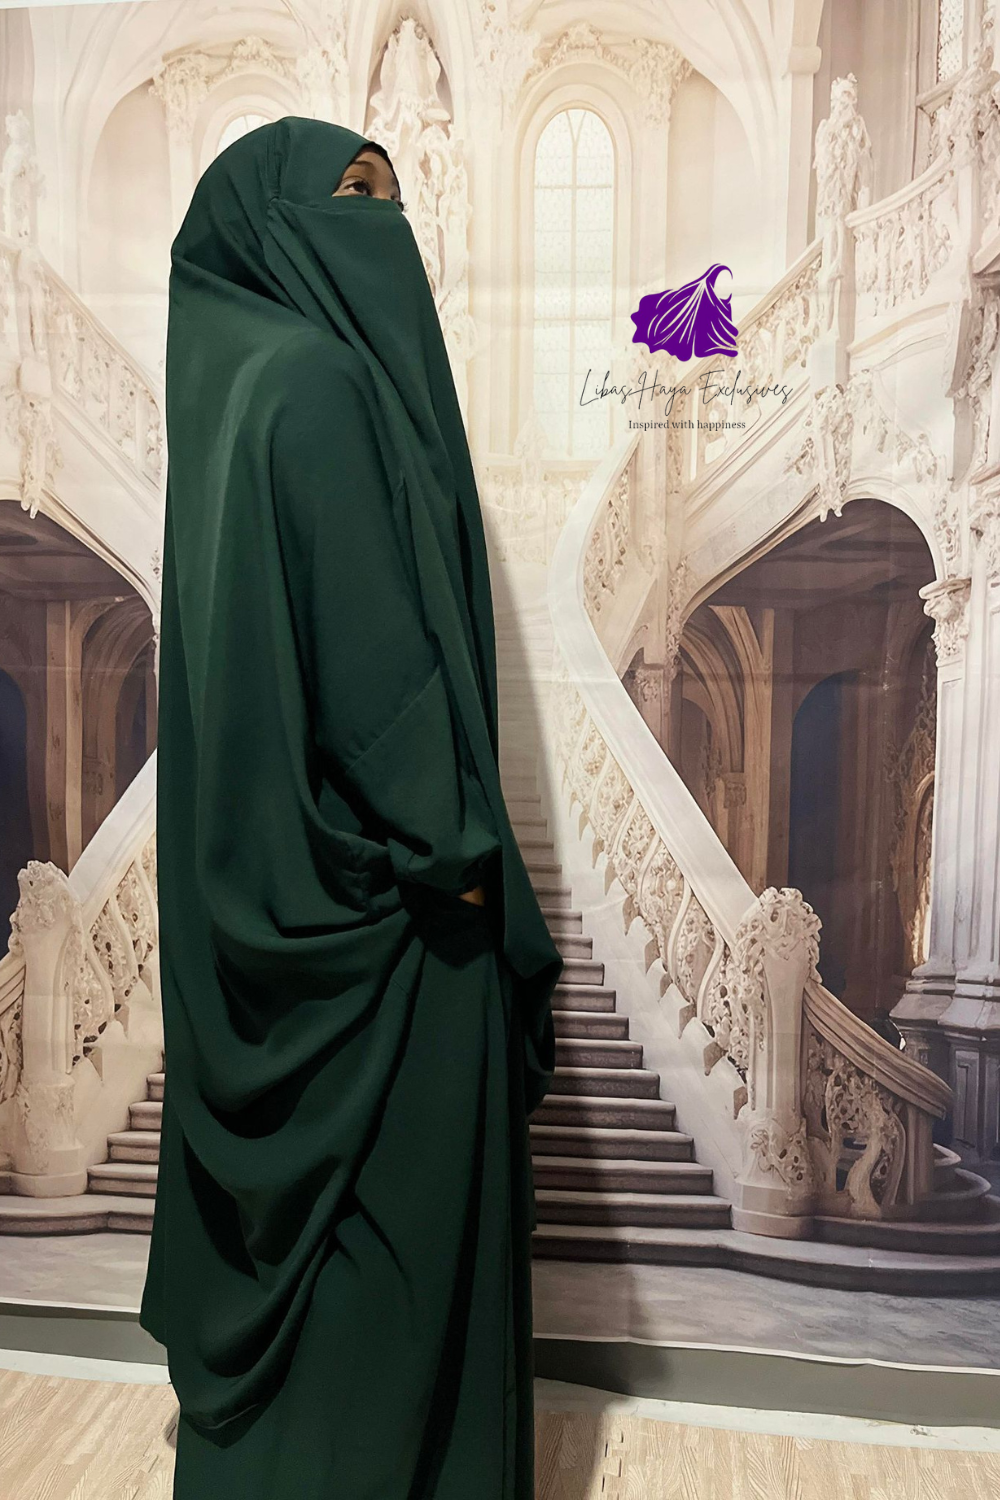 jilbab skirt libas haya exclusives